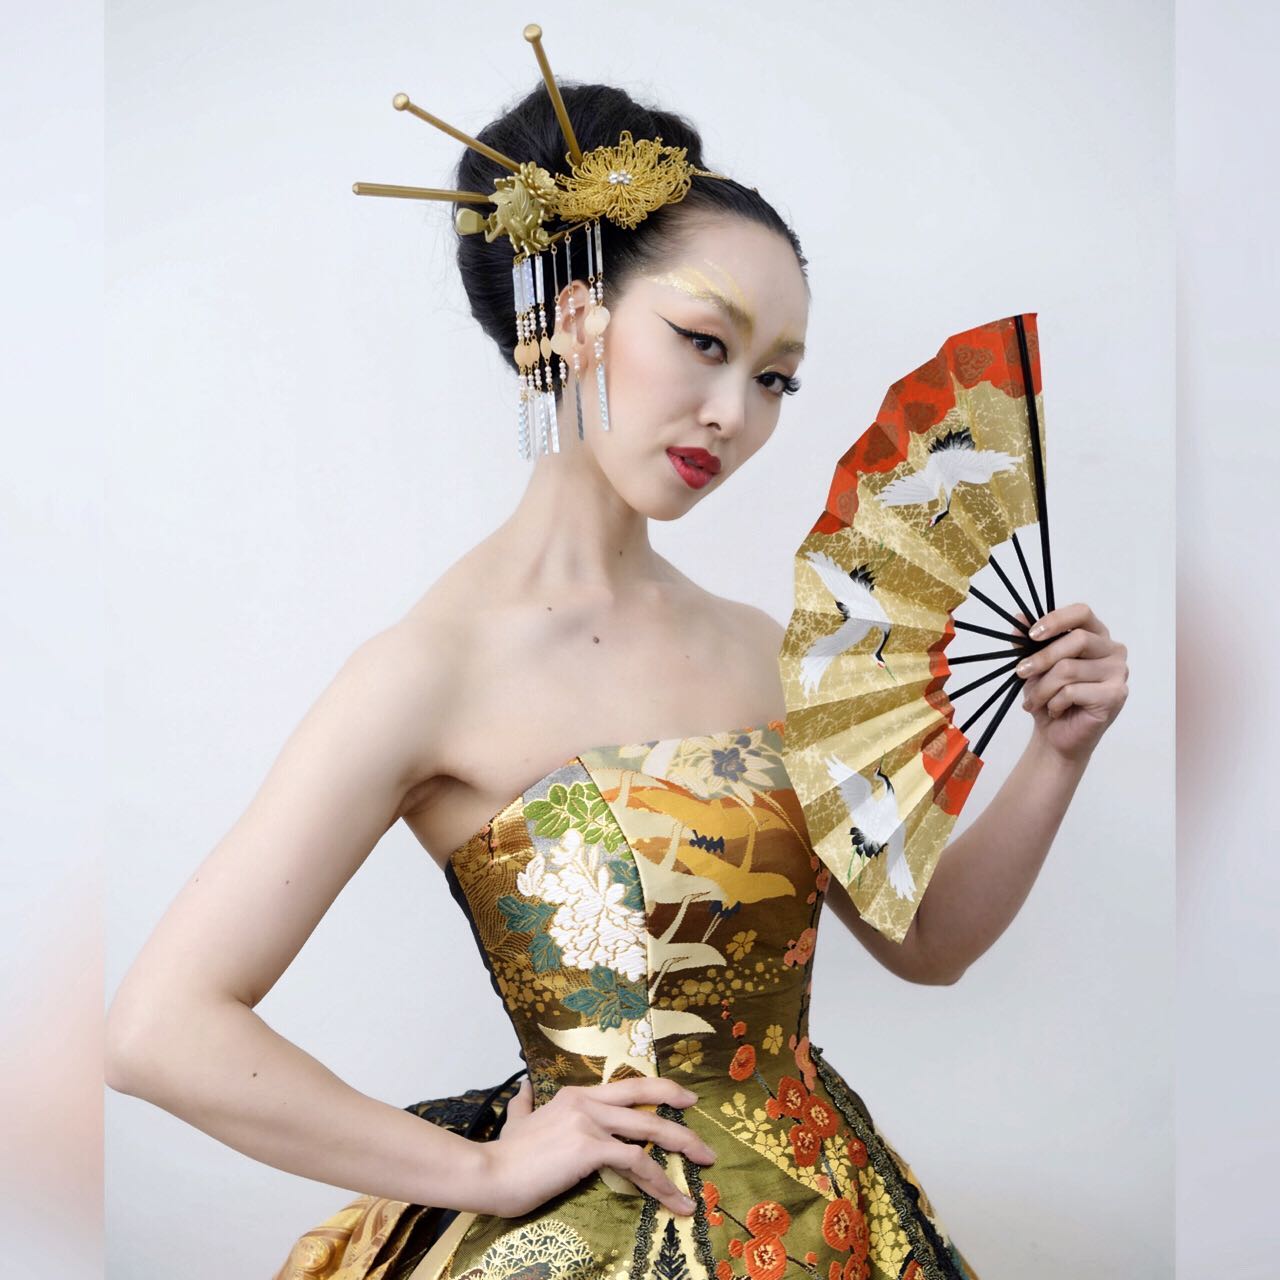 上田美江子さん、﻿ 美容歴40周年記念のショー in Tokyo﻿ ﻿ 美江子さん指導のもと、 板垣達也さんが制作された﻿ 和の美を彩る﻿ 華やかなヘアメイク﻿ ﻿ ﻿ ホームページでは﻿ たくさんの和ドレスをご紹介しています﻿ @aliansa